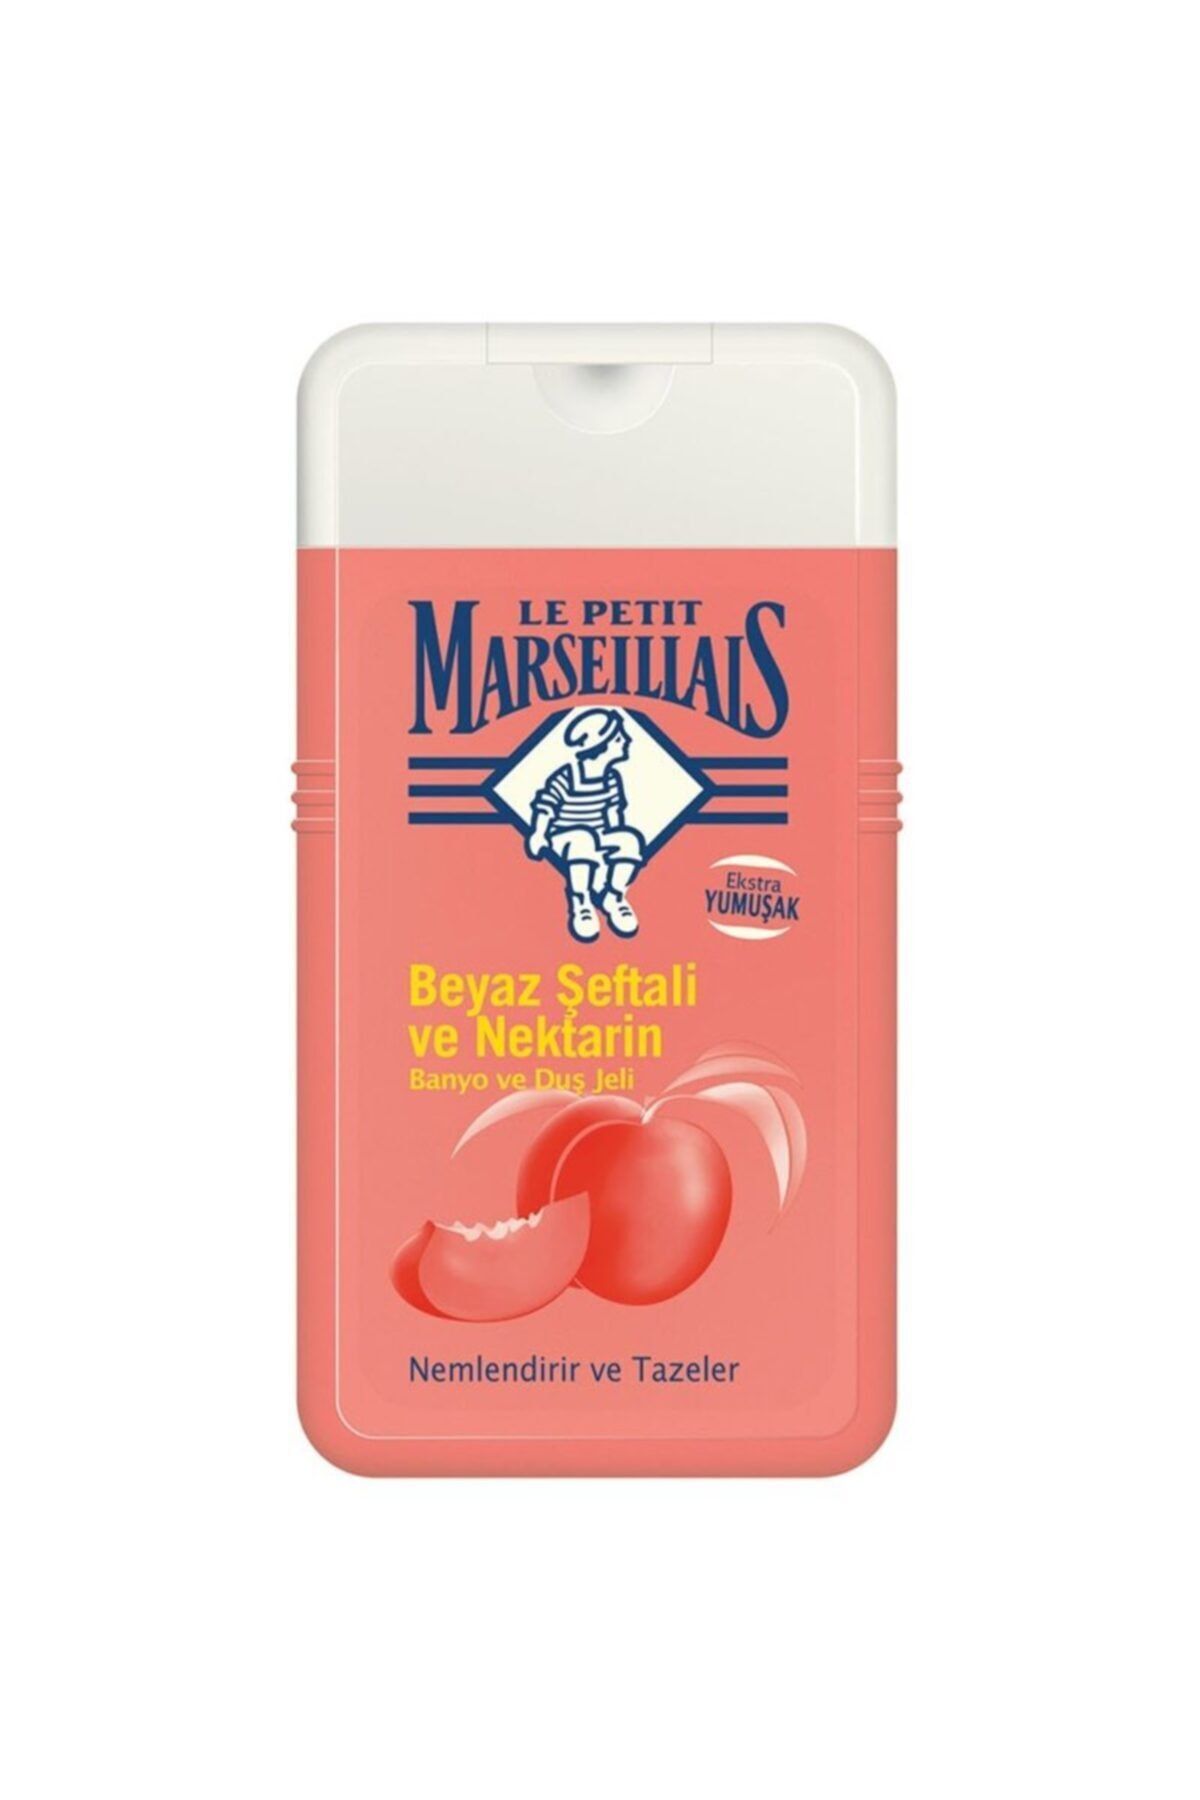 Le Petit Marseillais Duş Jeli Şeftali 250 ml